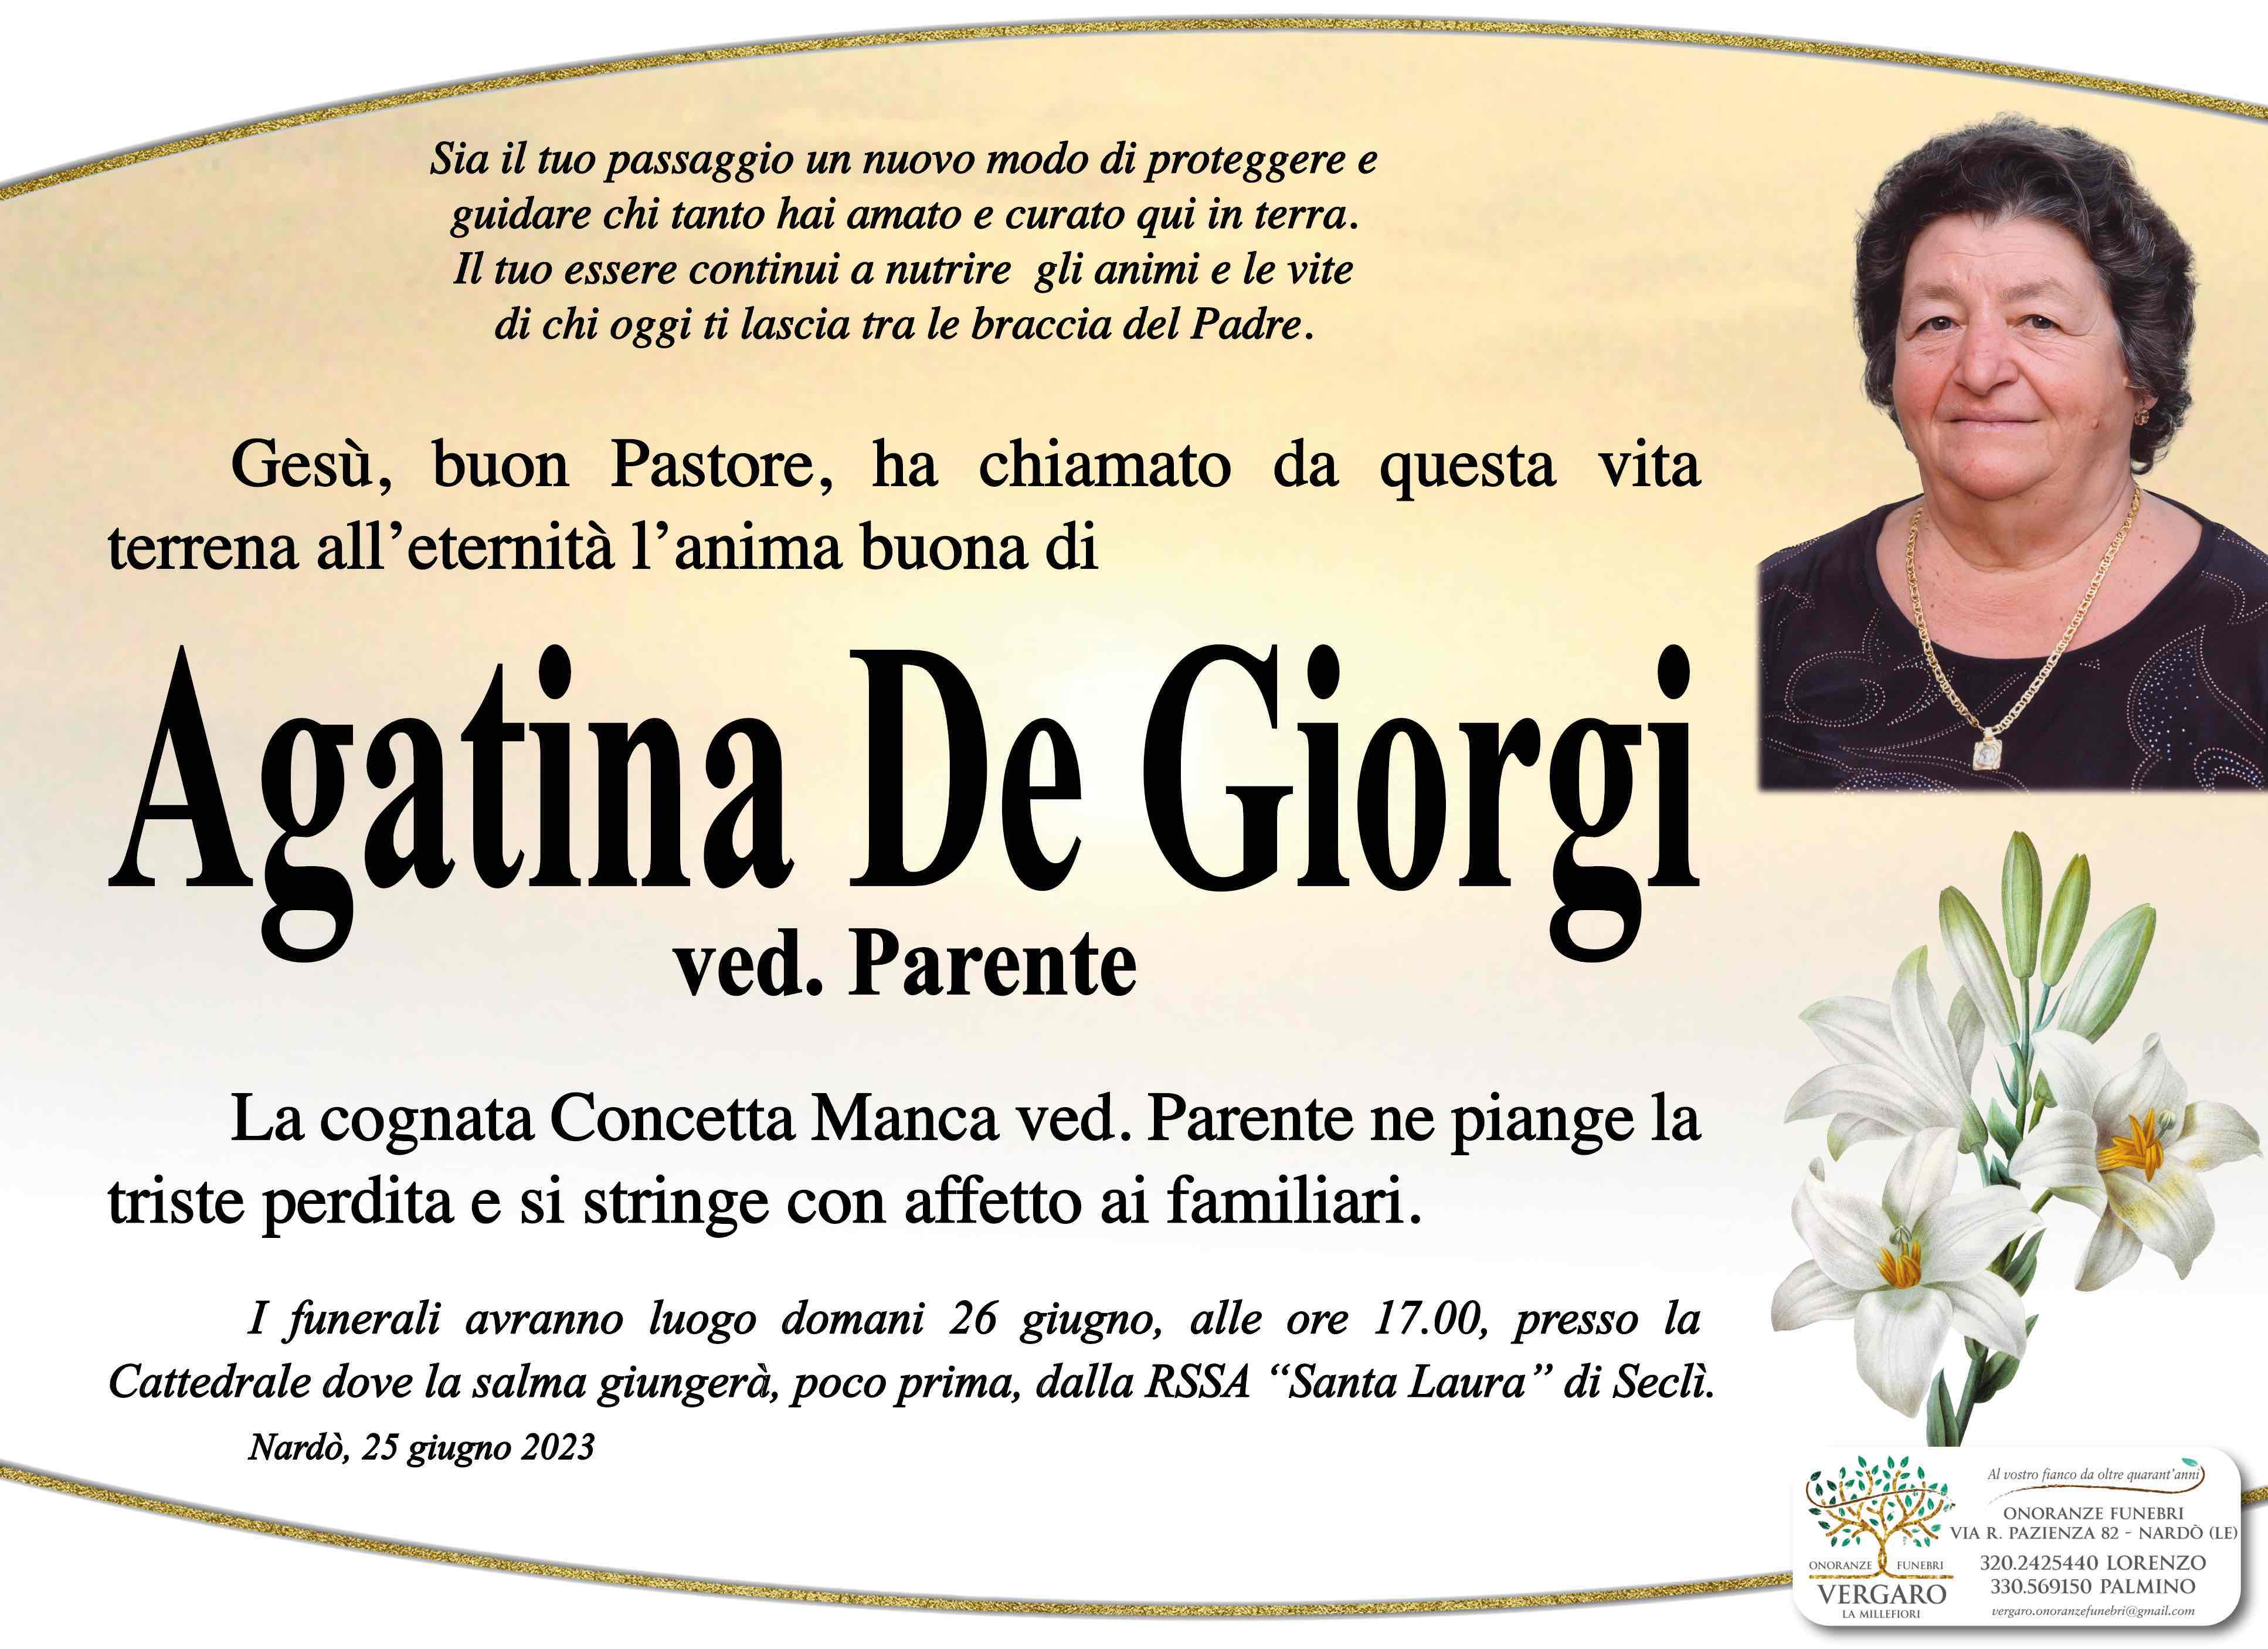 Agatina De Giorgi